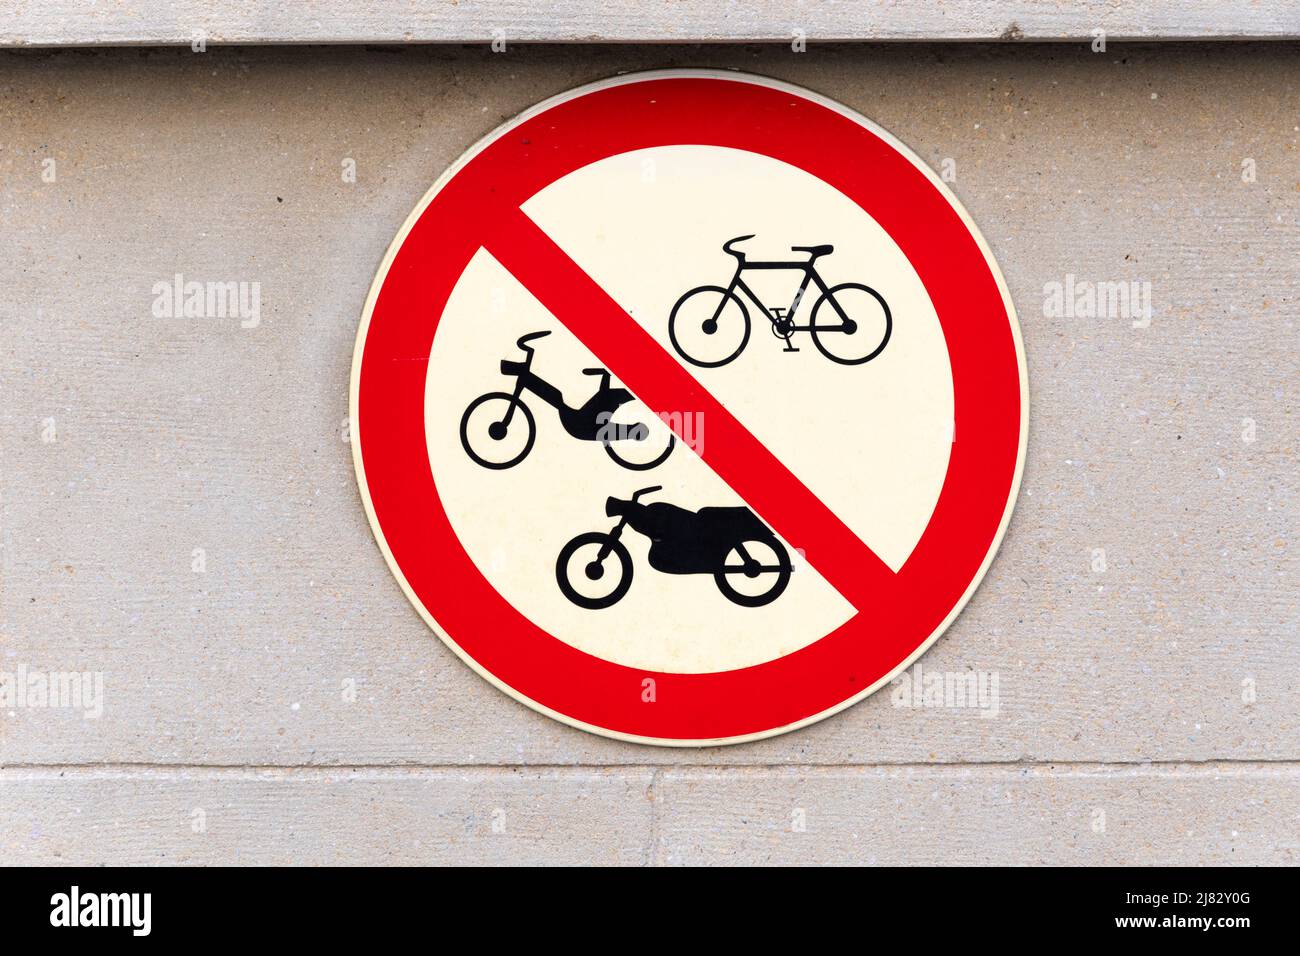 Señal de prohibición para bicicletas, bicicletas, motocicletas y motos Foto de stock